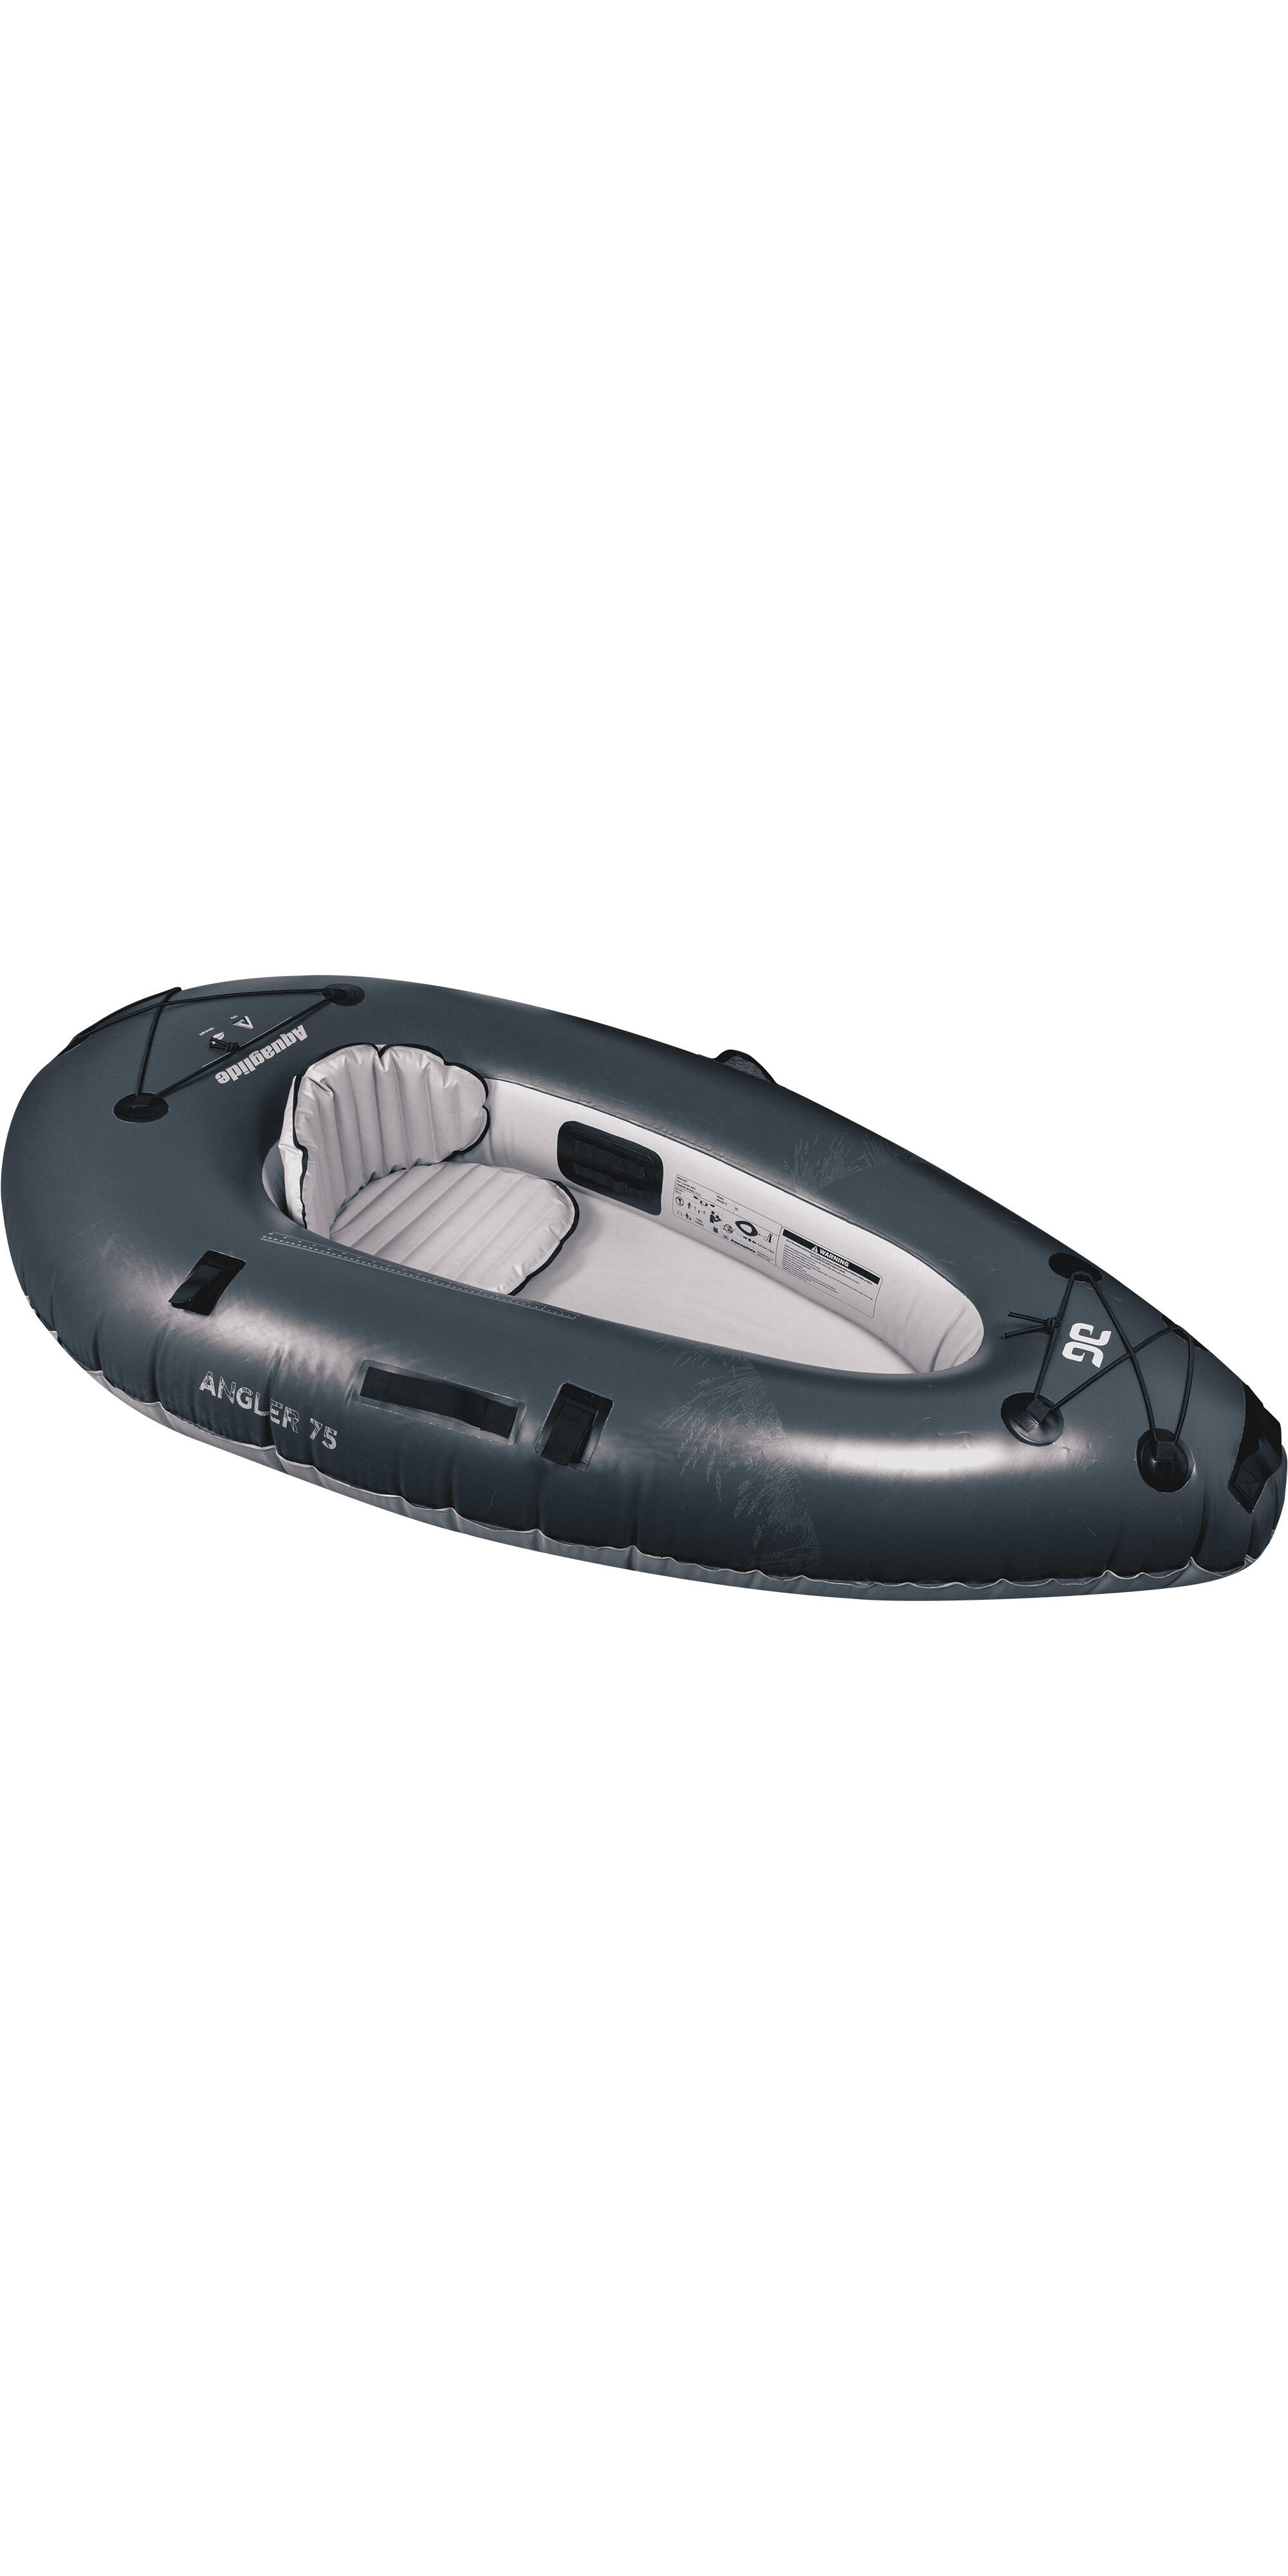 Backwoods 75 Ultralight 1 Person Angler Kayak - Navy 2/4